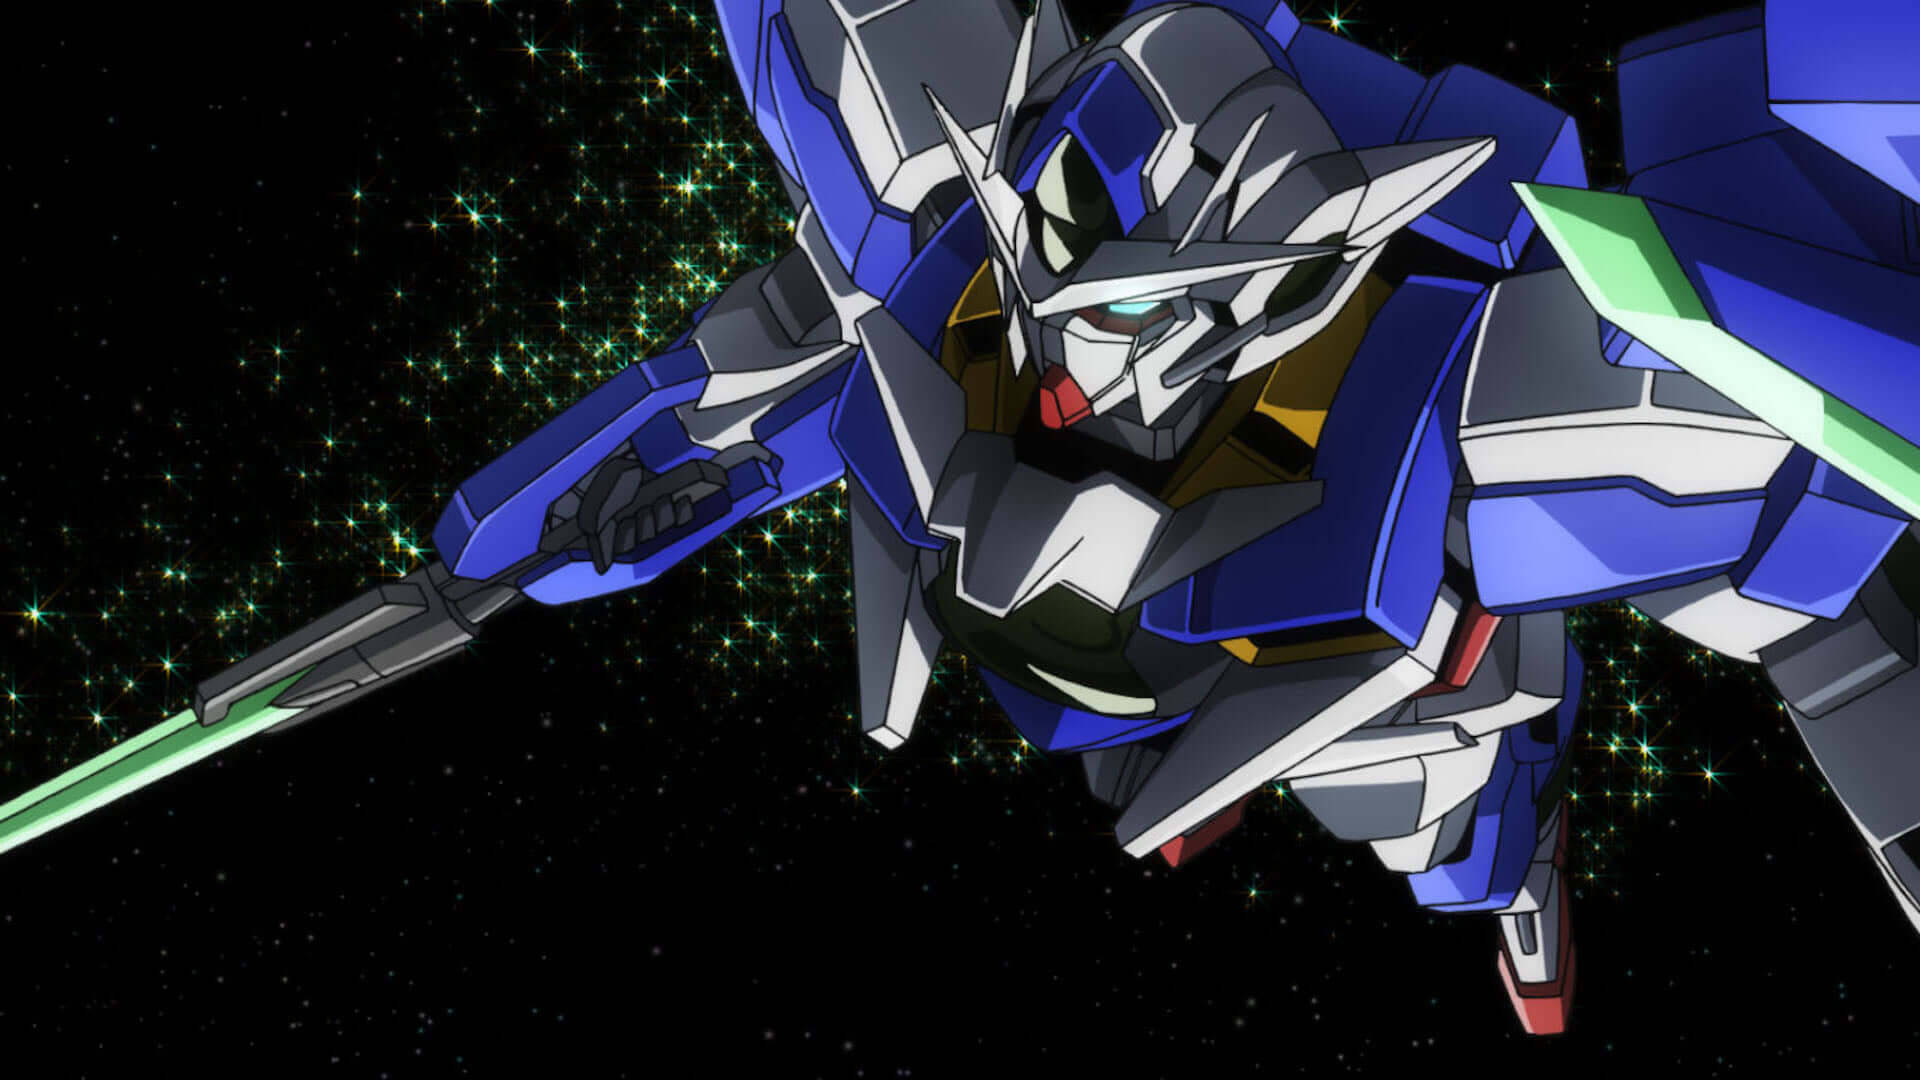 Anime Anime Screenshot Gundam Mechs Mobile Suit Gundam 00 Artwork Digital Art 00 Qan T Super Robot T 1920x1080